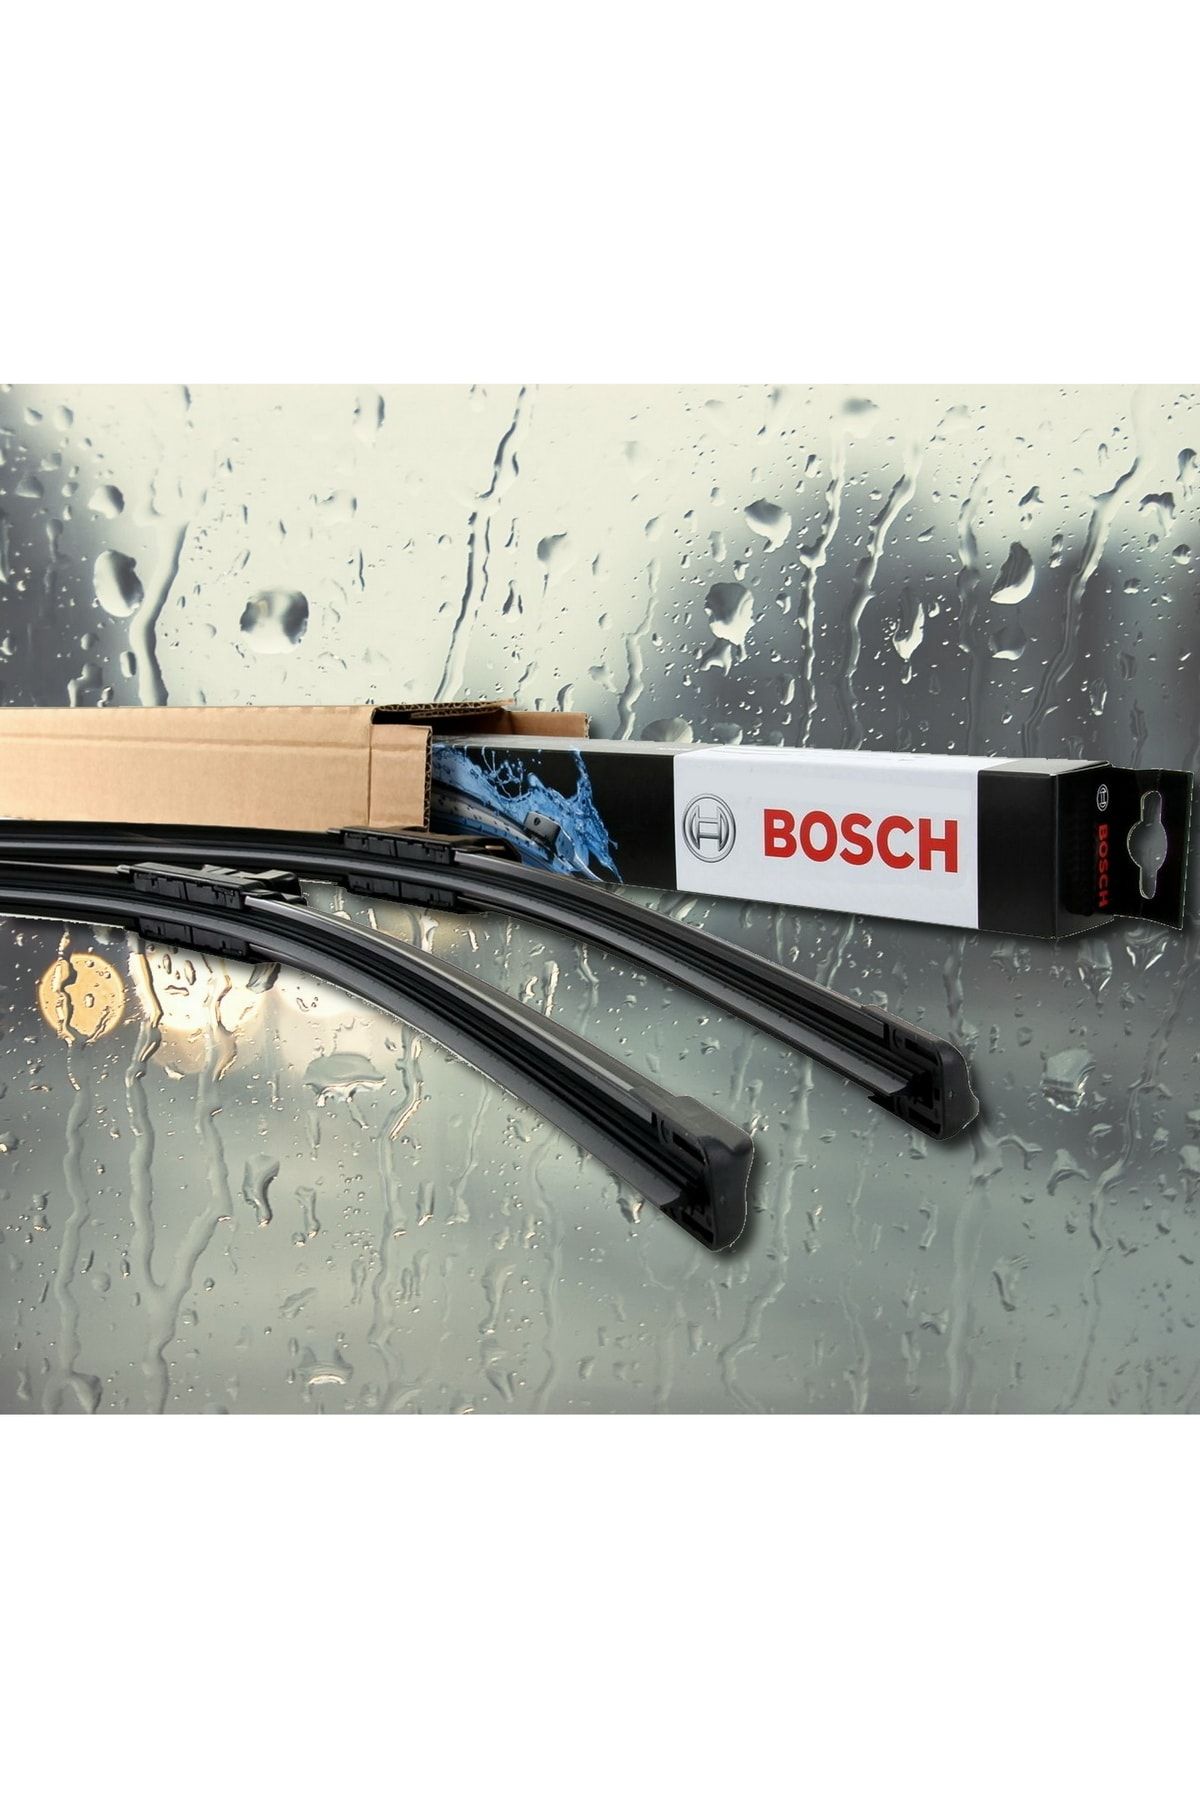 Bosch Usta Parçacı Vw Jetta Silecek Takımı 2011-2017 Aerotwin A620s